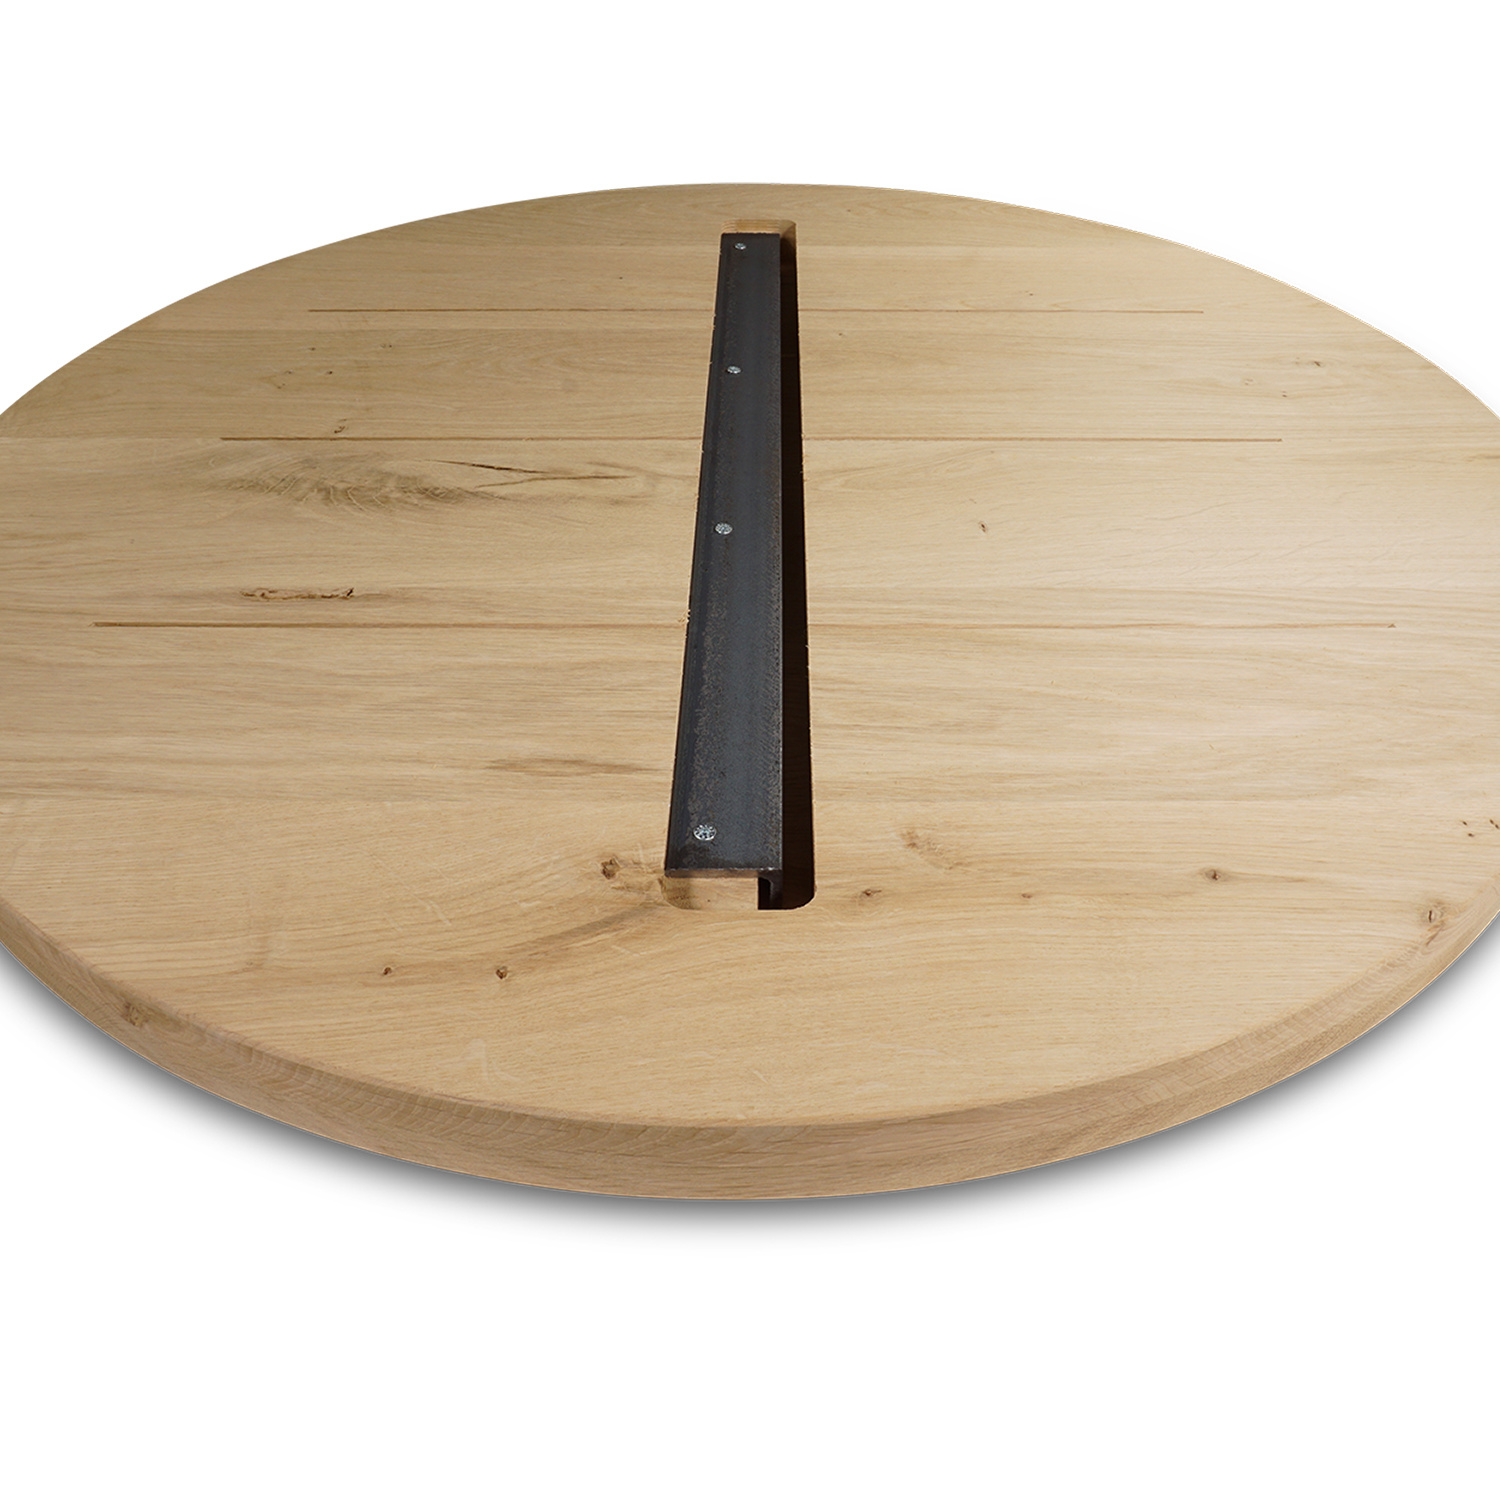  Rond eiken tafelblad op maat - 4 cm dik (2-laags) - rustiek Europees eikenhout - verlijmd kd 8-12% - diameter van 30 tot 180 cm